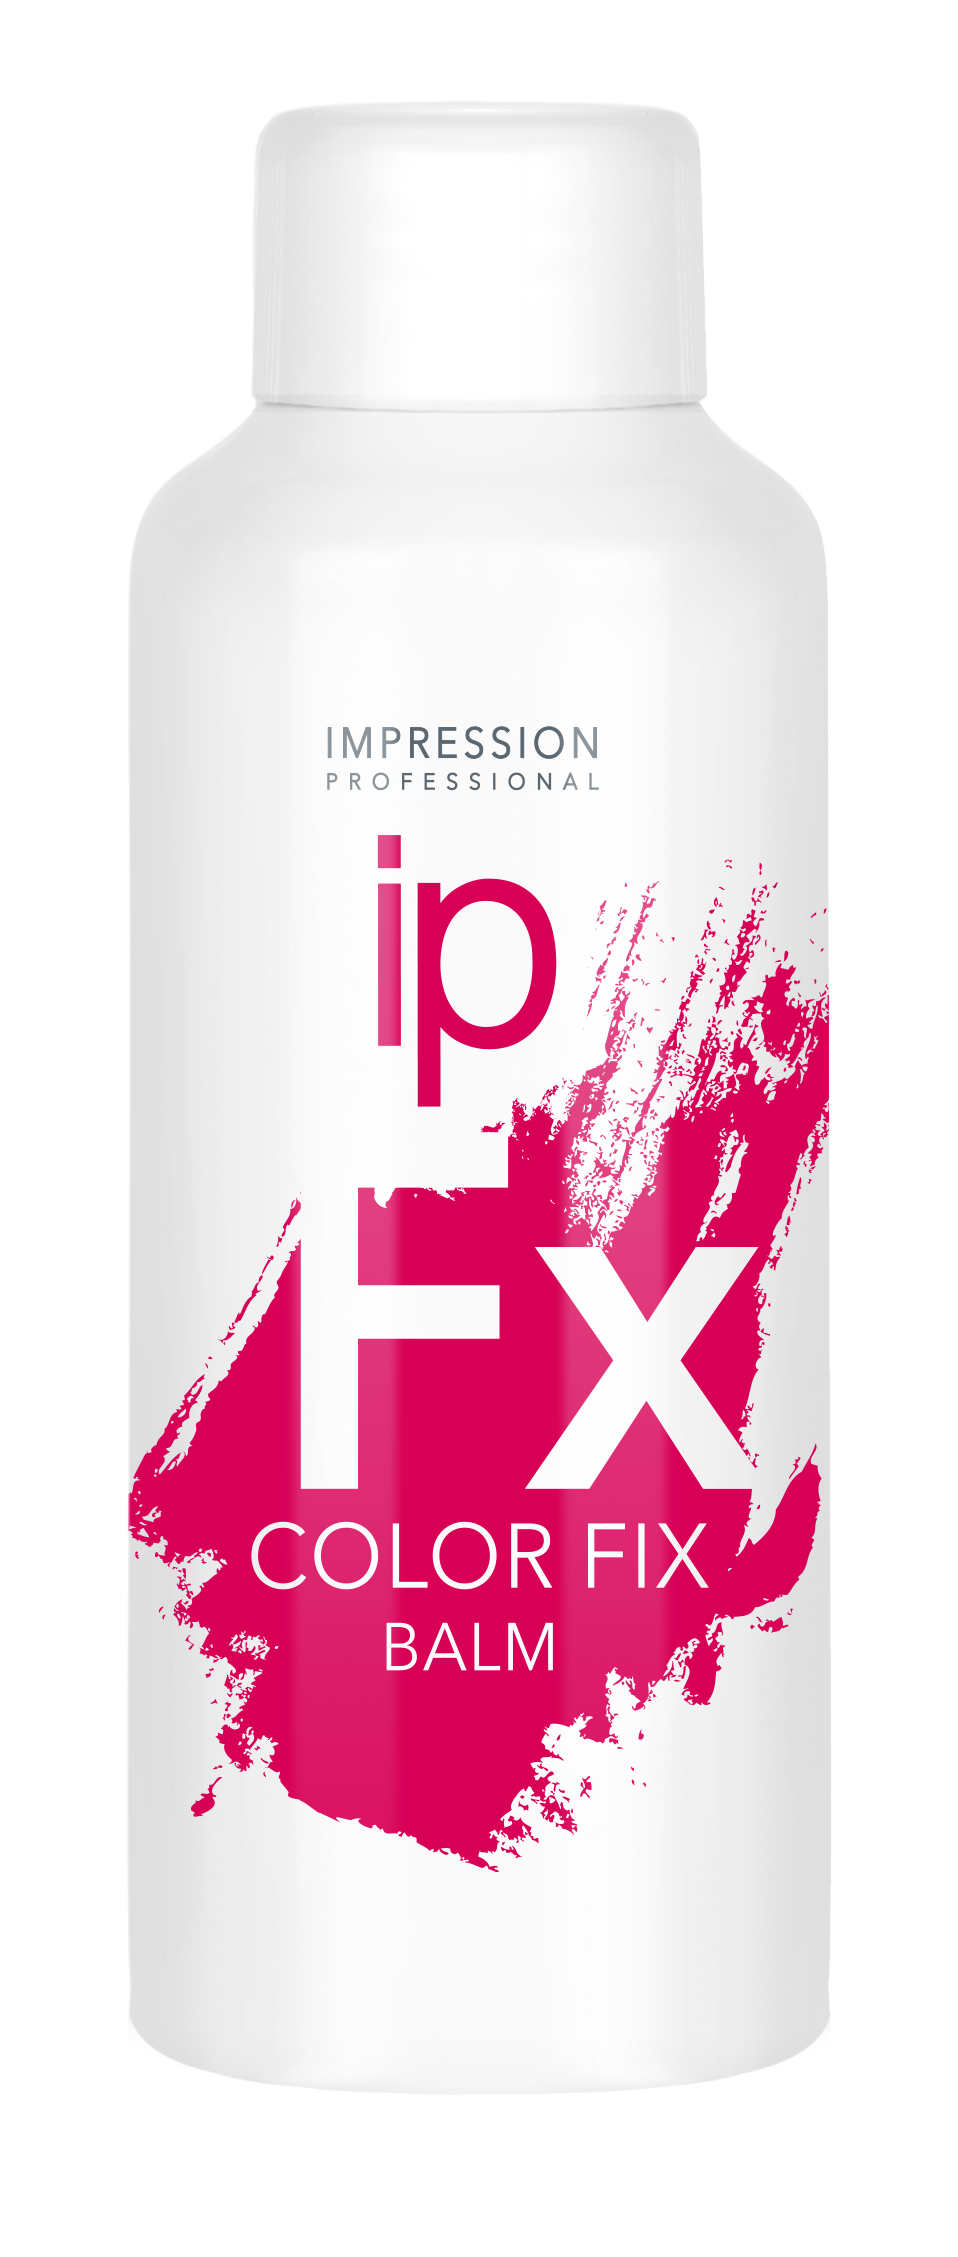 Бальзам для волос Impression Professional Color Fix стабилизатор цвета 100мл - в интернет-магазине tut-beauty.by